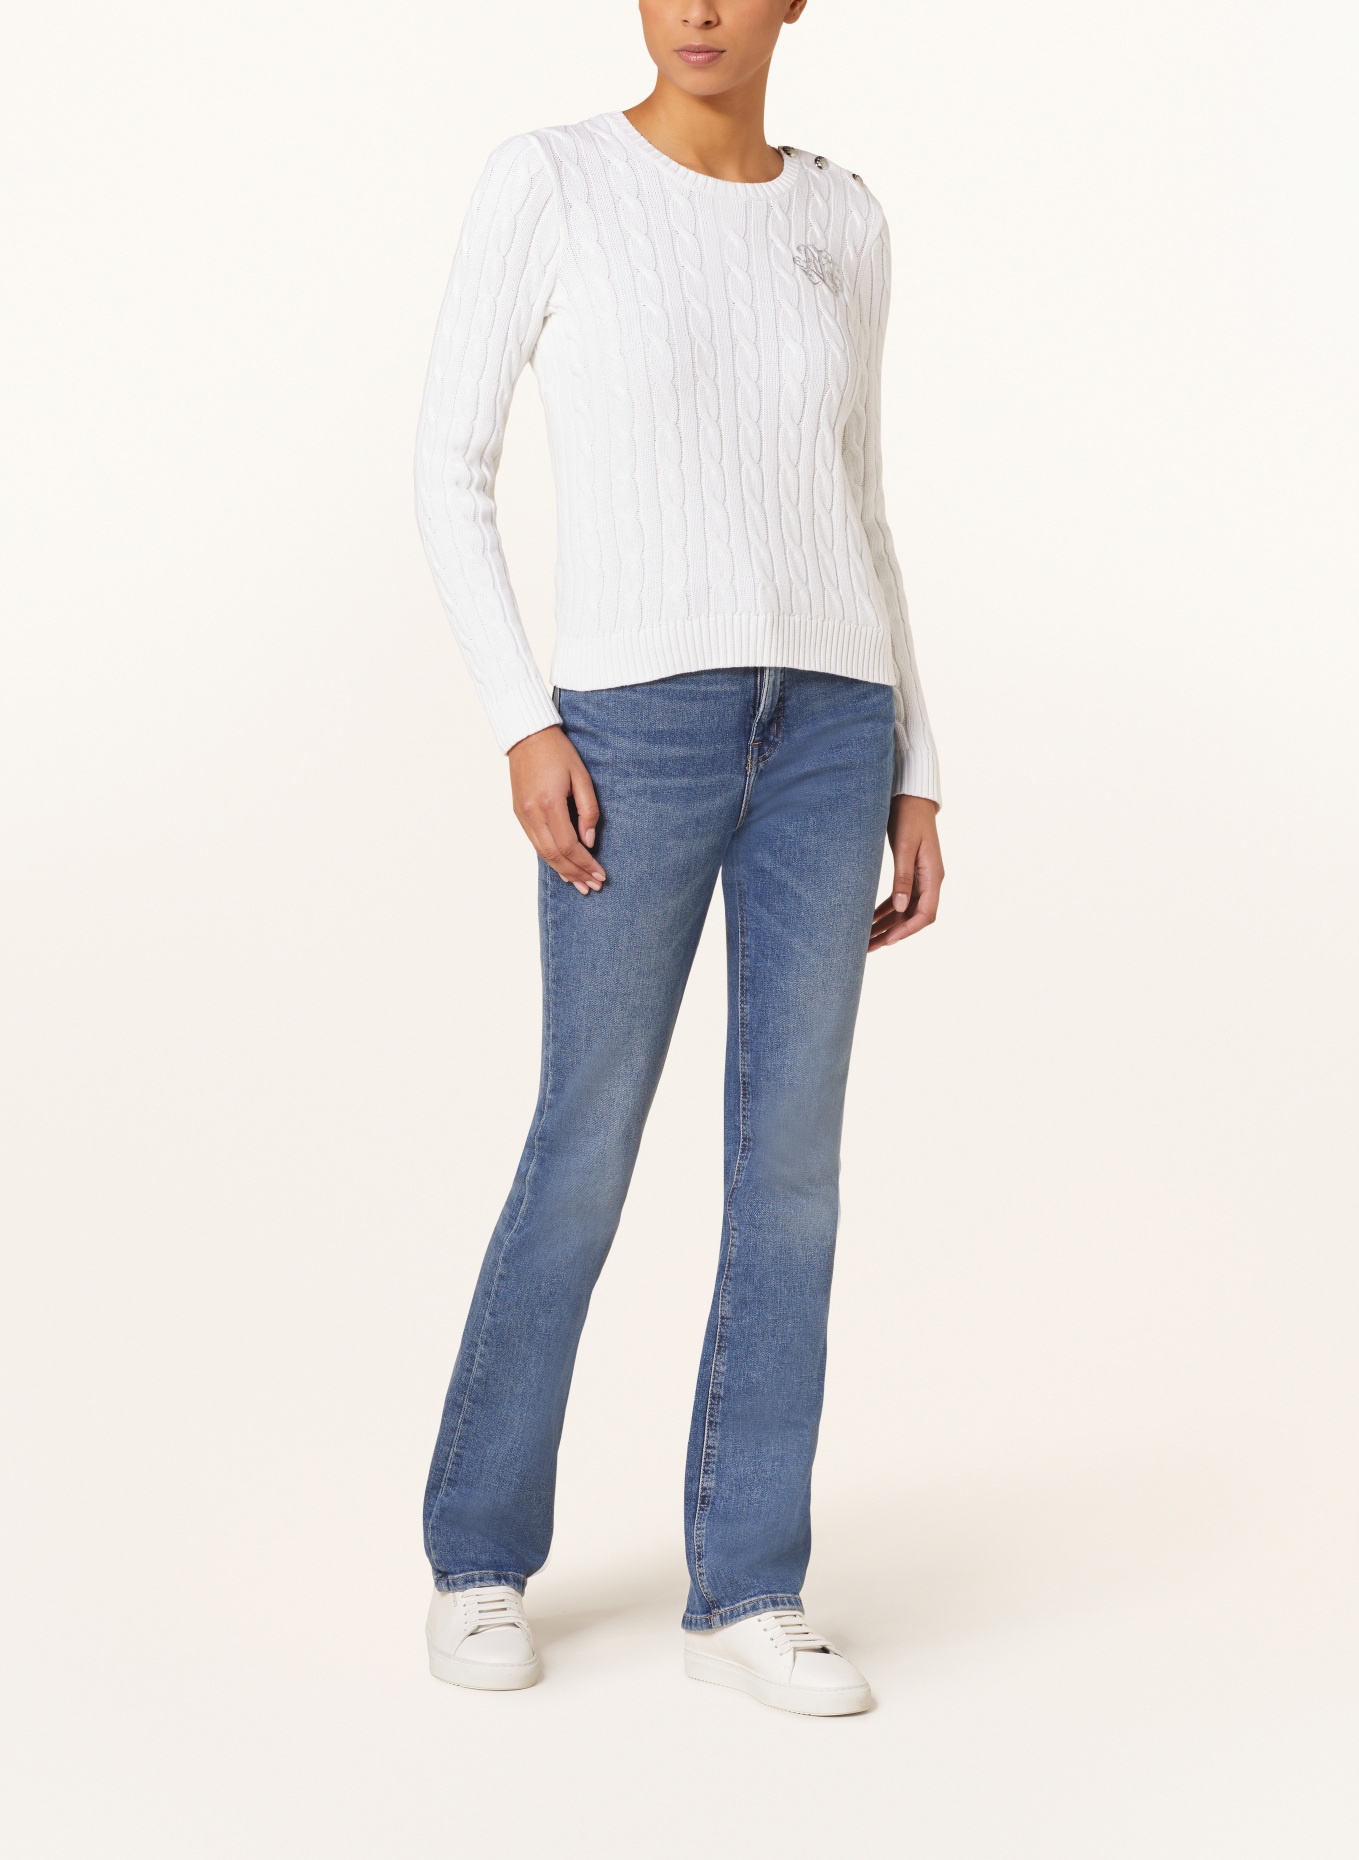 LAUREN RALPH LAUREN Sweater, Color: WHITE (Image 2)